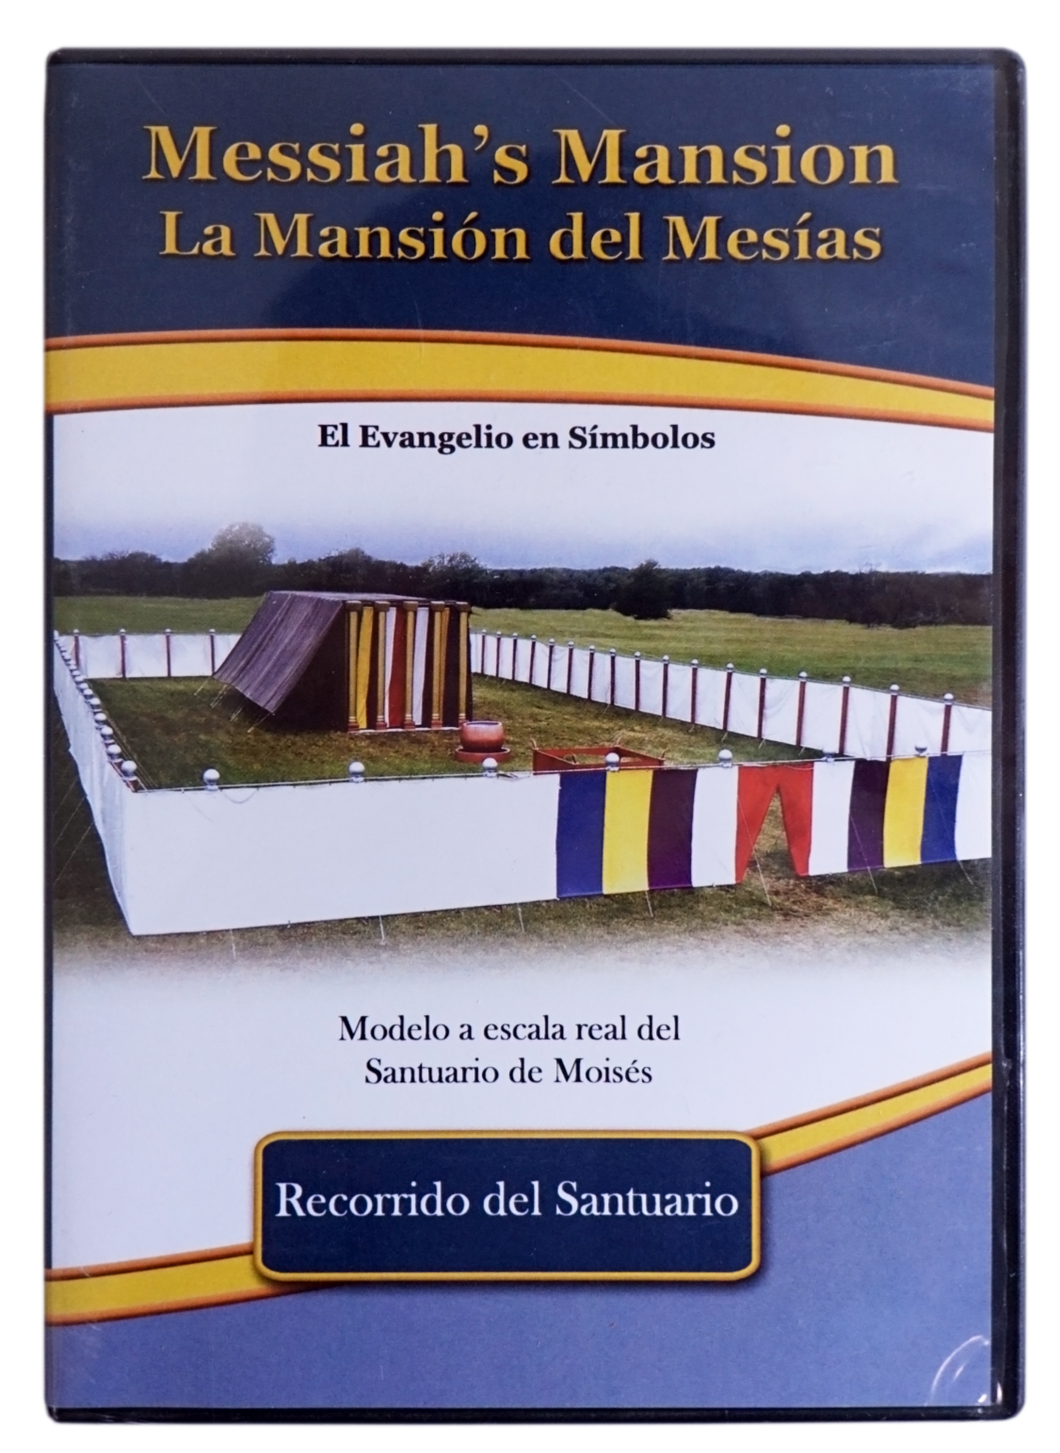 Messiah's Mansion Tour DVD (Spanish)